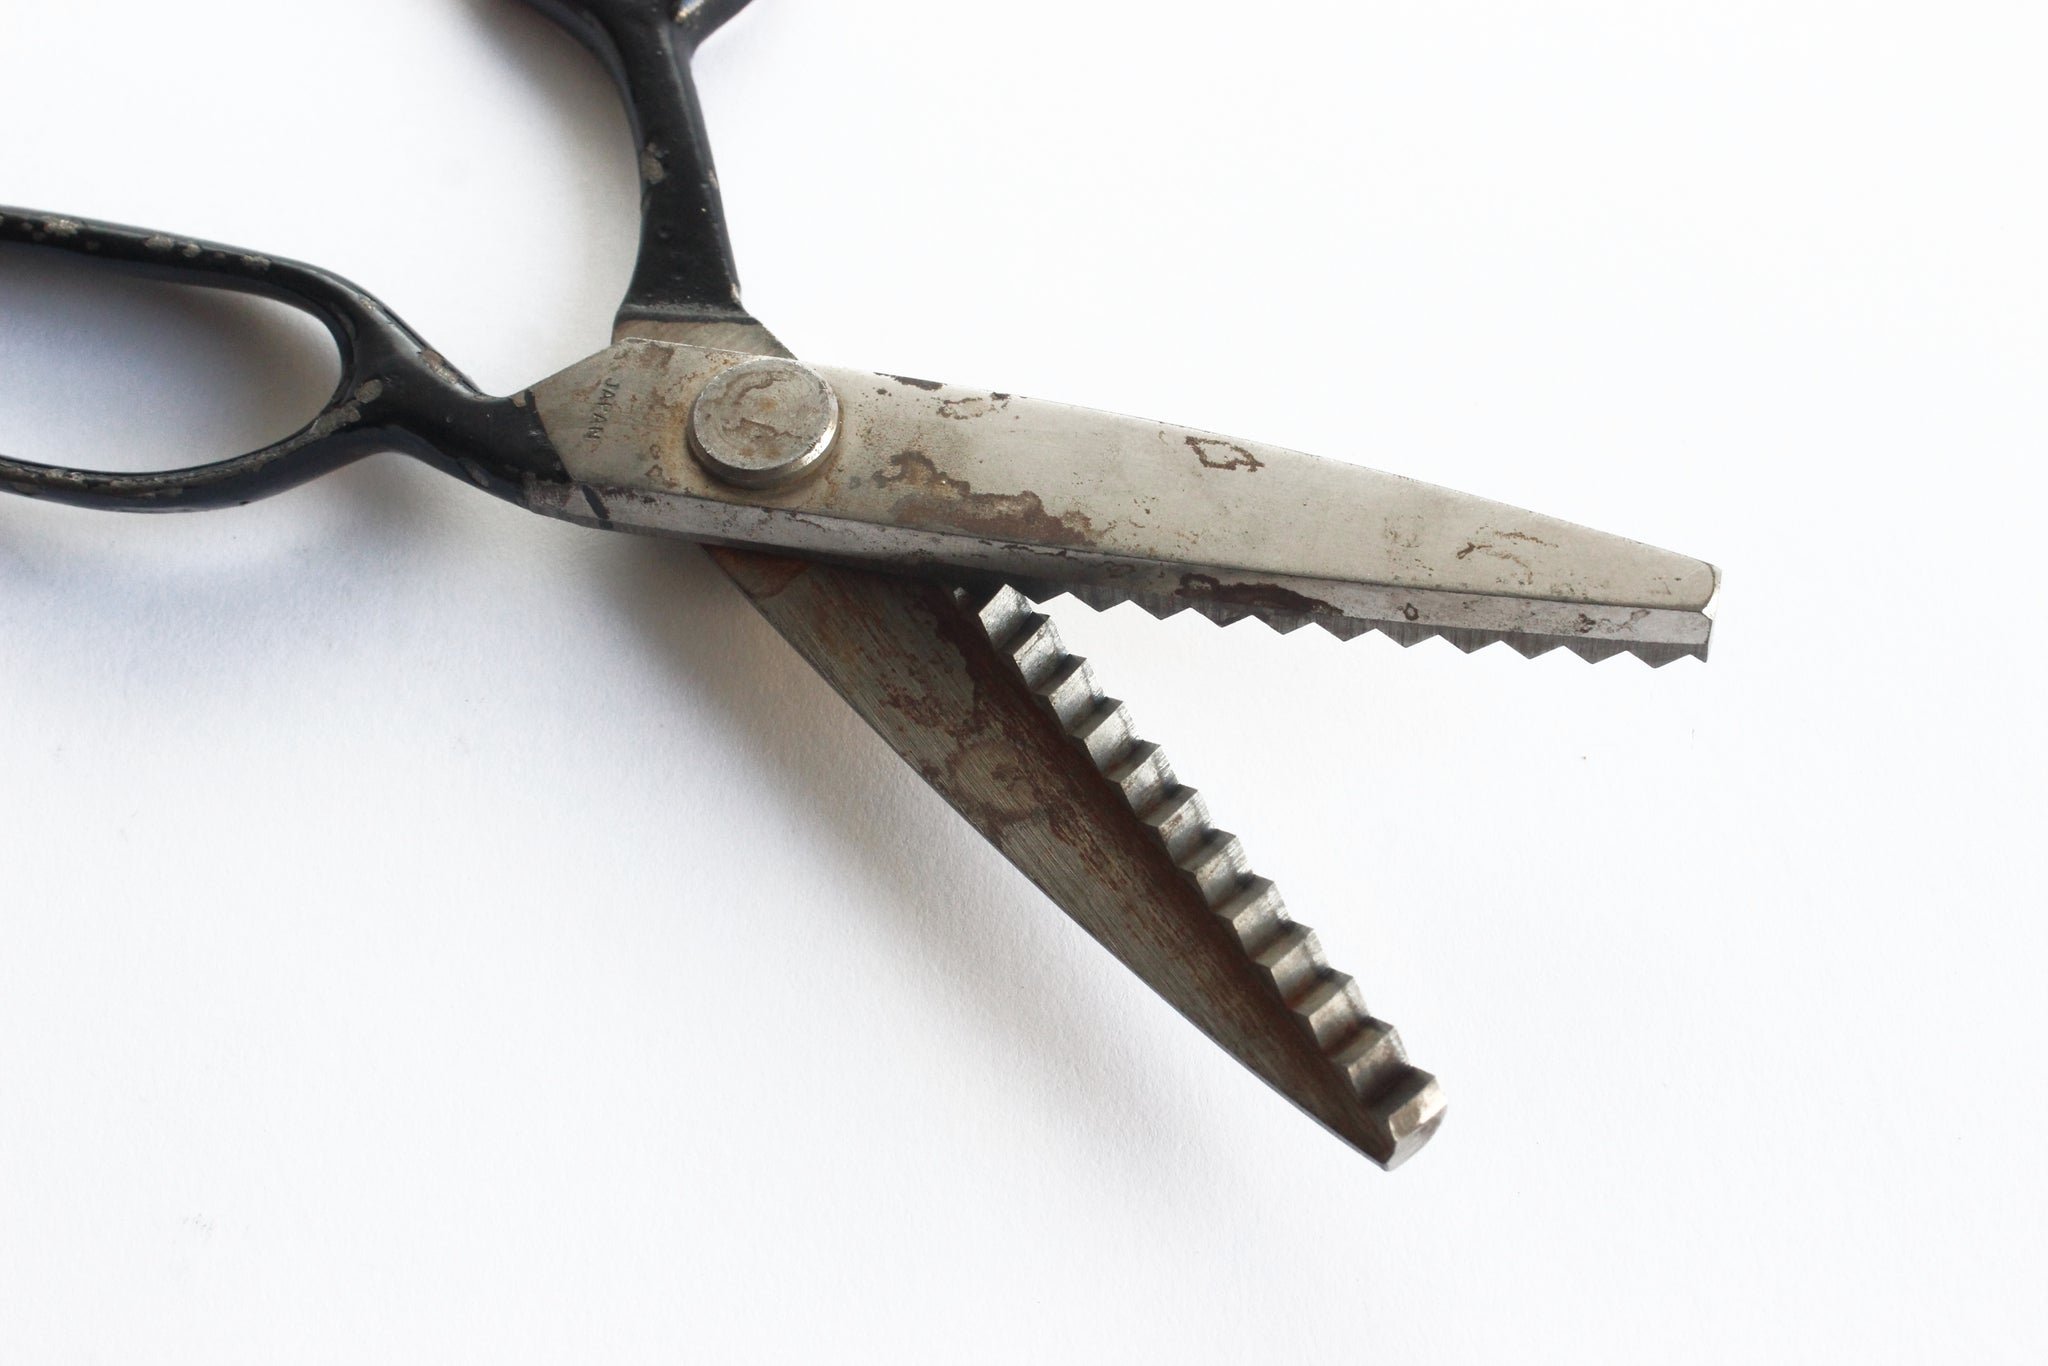 Vintage Black Handle Scissors Pair of Old Sewing Shears 